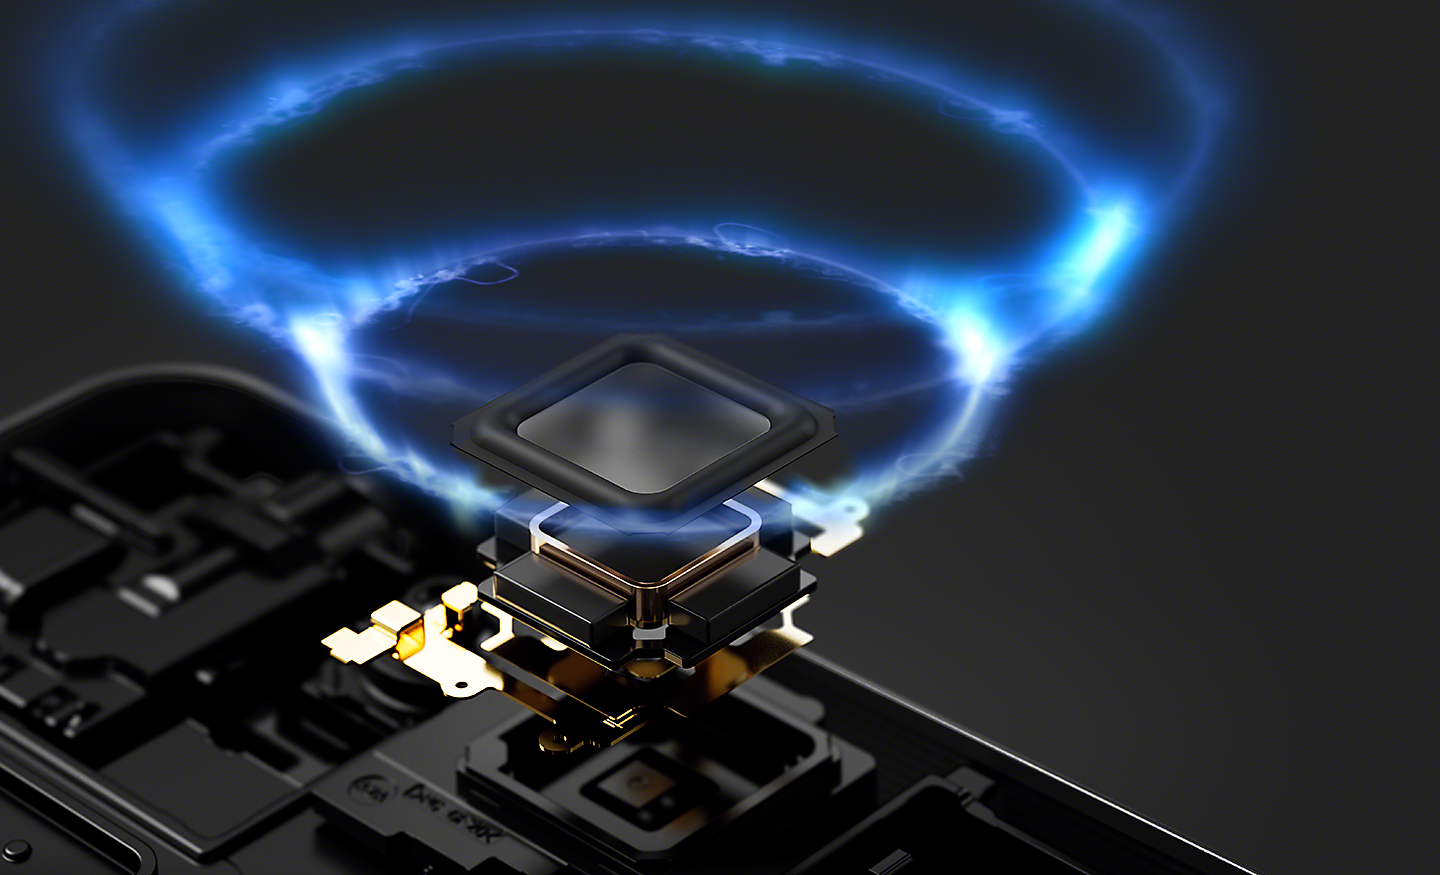 Obrázok zosilňovača reproduktorov v smartfóne Xperia 1 V, vysiela ilustrované modré zvukové vlny